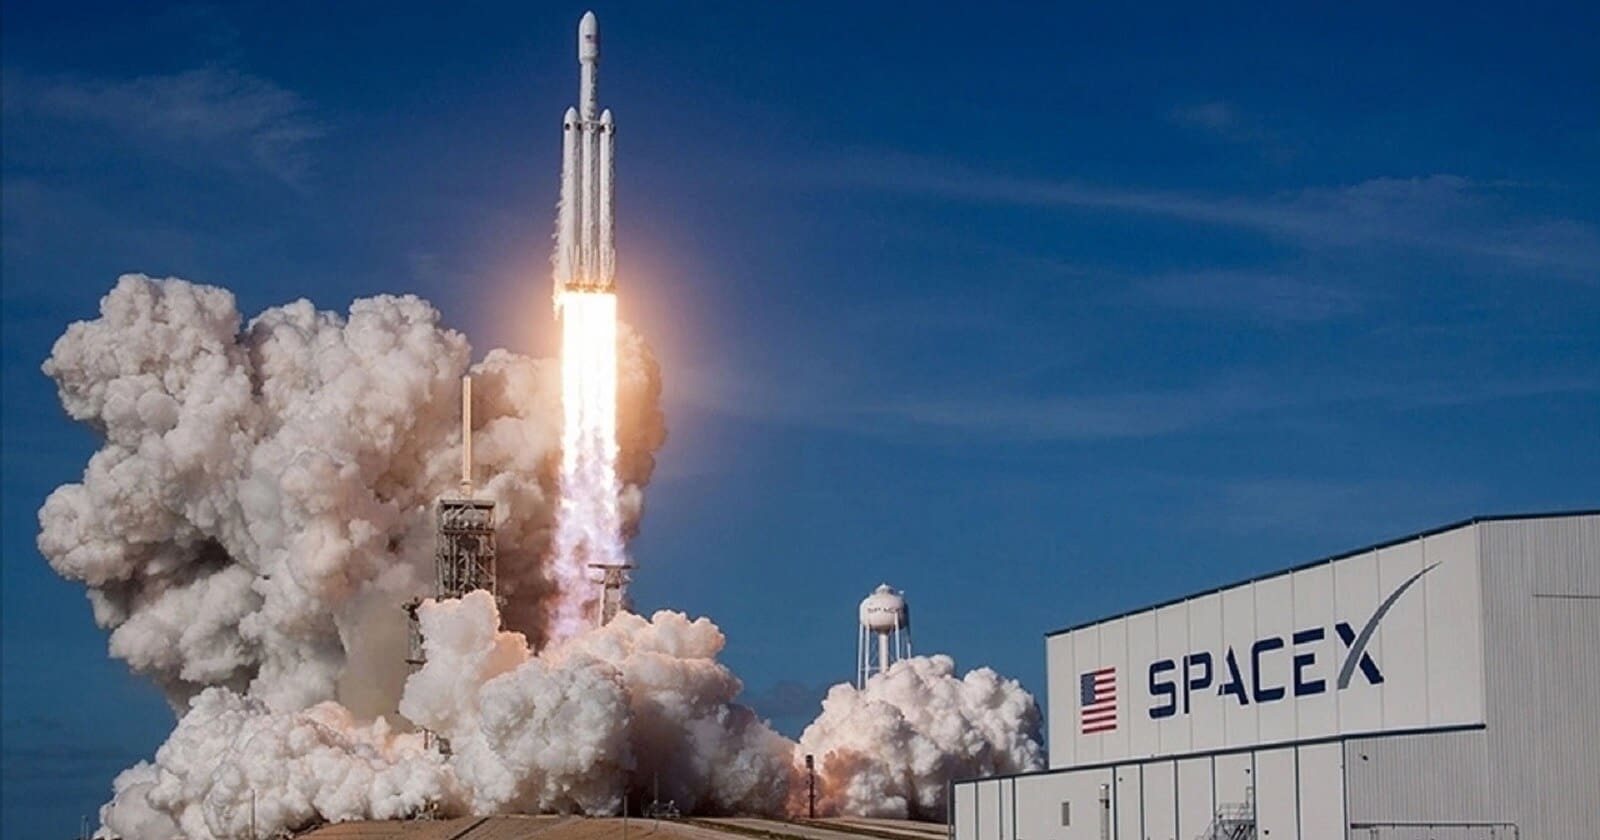 ABD istihbarat uydusu SpaceX ile Kaliforniyadan Uzaya firlatildi ABD istihbarat uydusu SpaceX ile Kaliforniya'dan Uzaya fırlatıldı